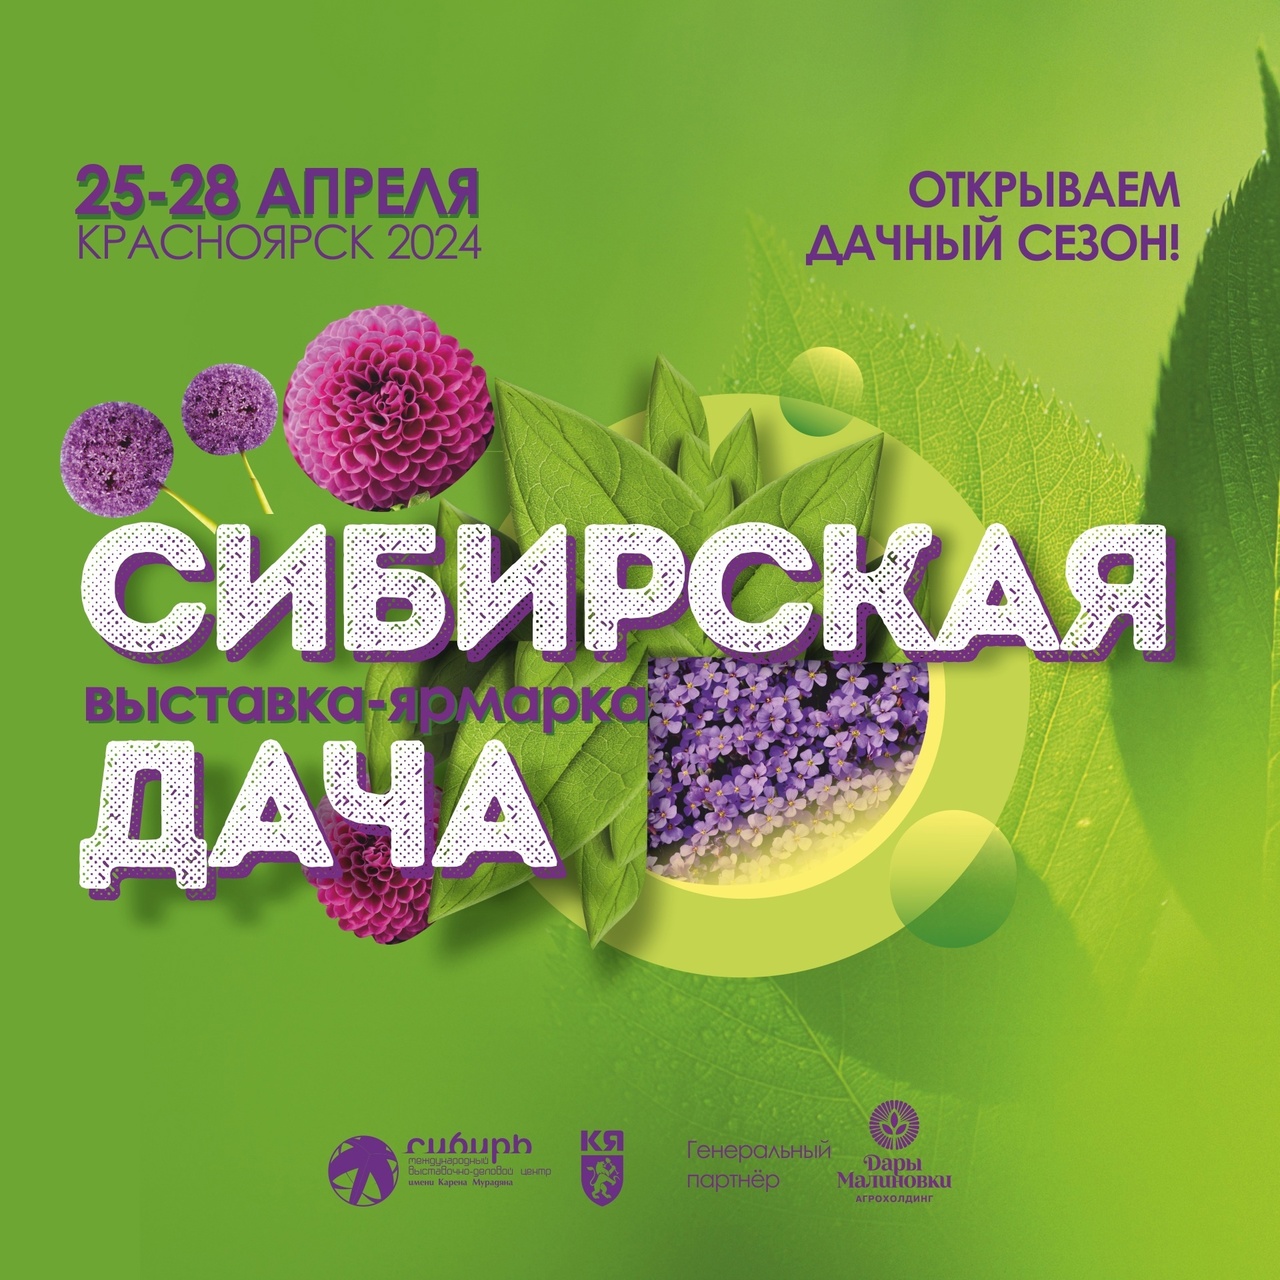 Ярмарка в Красноярске с 25 по 28 апреля в МВЦ Сибирь на выставке-ярмарке "Сибирская дача"